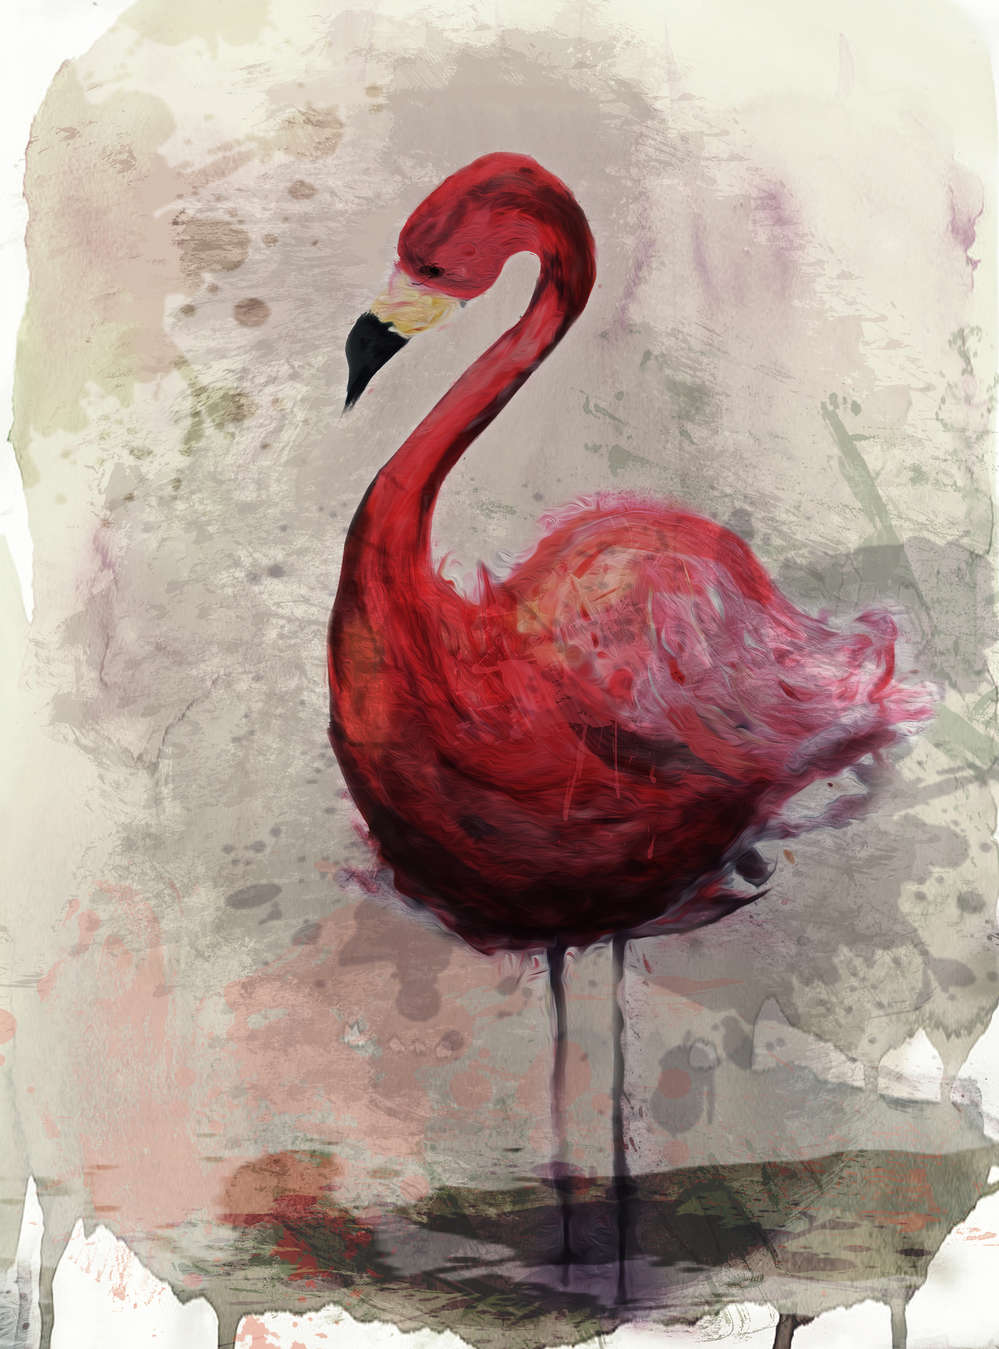             Aquarell Fototapete mit Flamingo Motiv im Zeichenstil
        